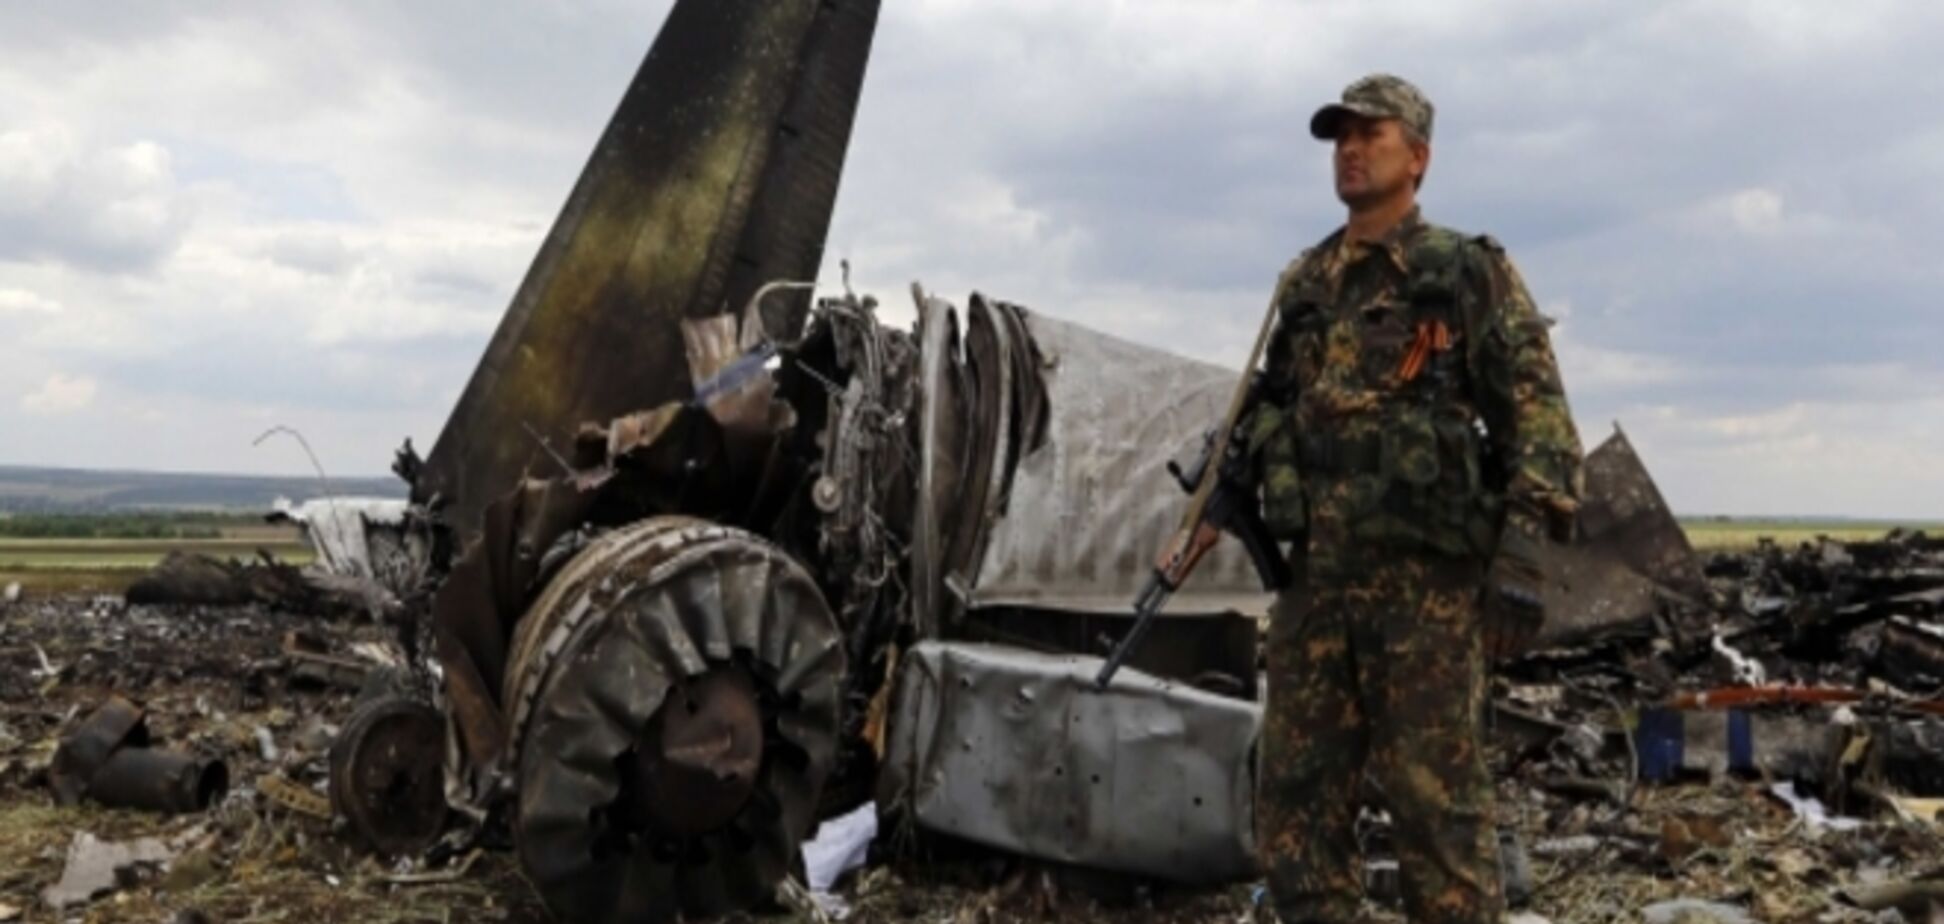 Террористы, сбившие Ил-76 под Луганском, были проинформированы предателями - Тымчук